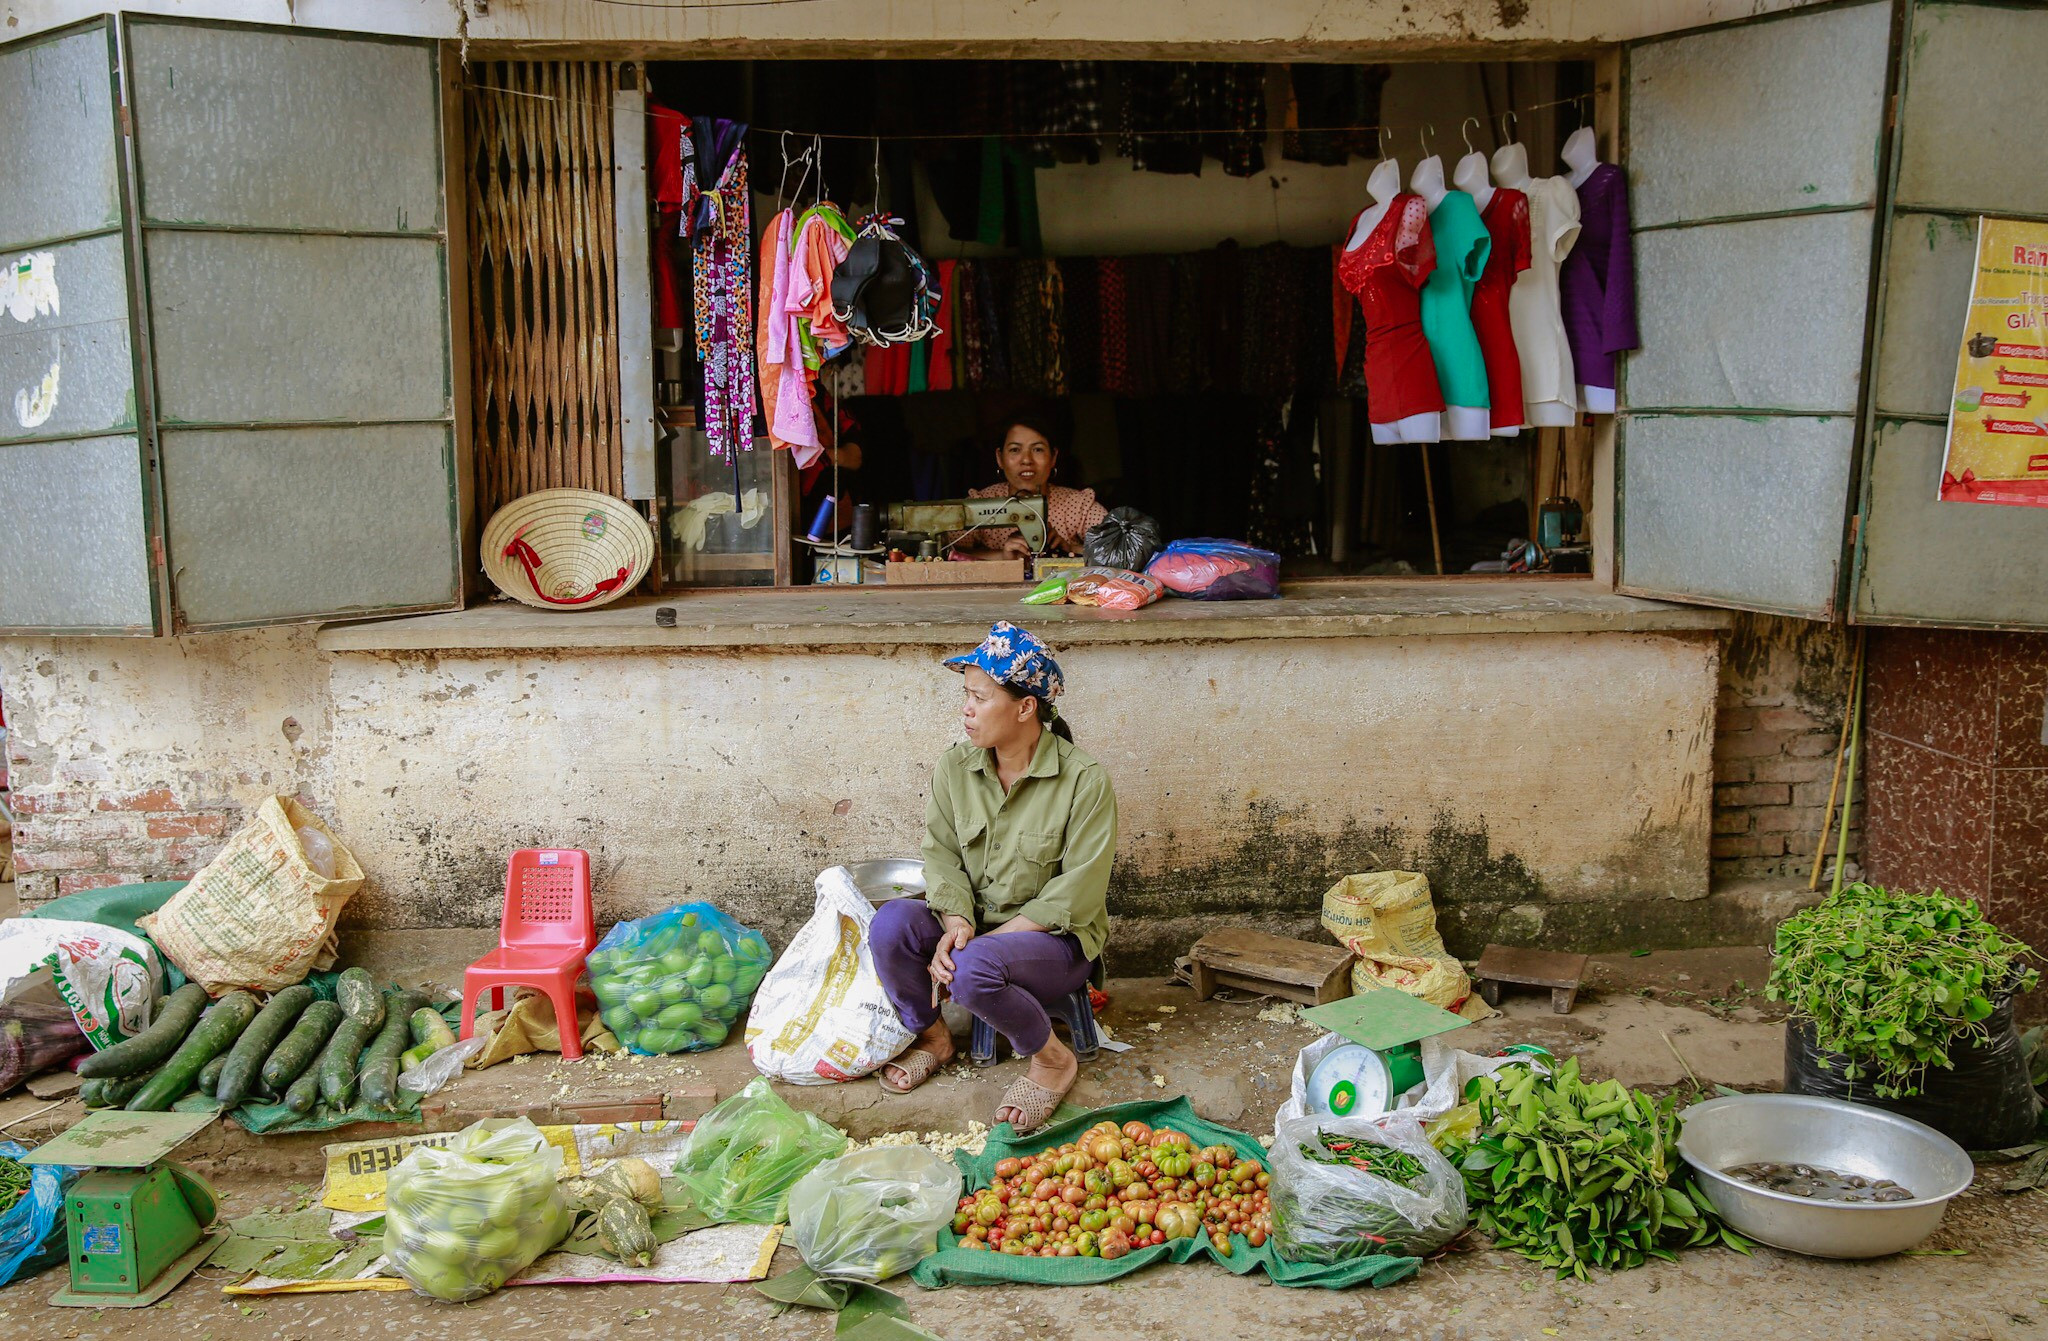 Chợ Chùa phong phú các mặt hàng, nhưng vào buổi sáng nhiều nhất là mặt hàng rau quả để bán sỷ cho thương lái nhiều vùng. Trong ảnh: Một cửa hàng may ngay bên trong hàng rau